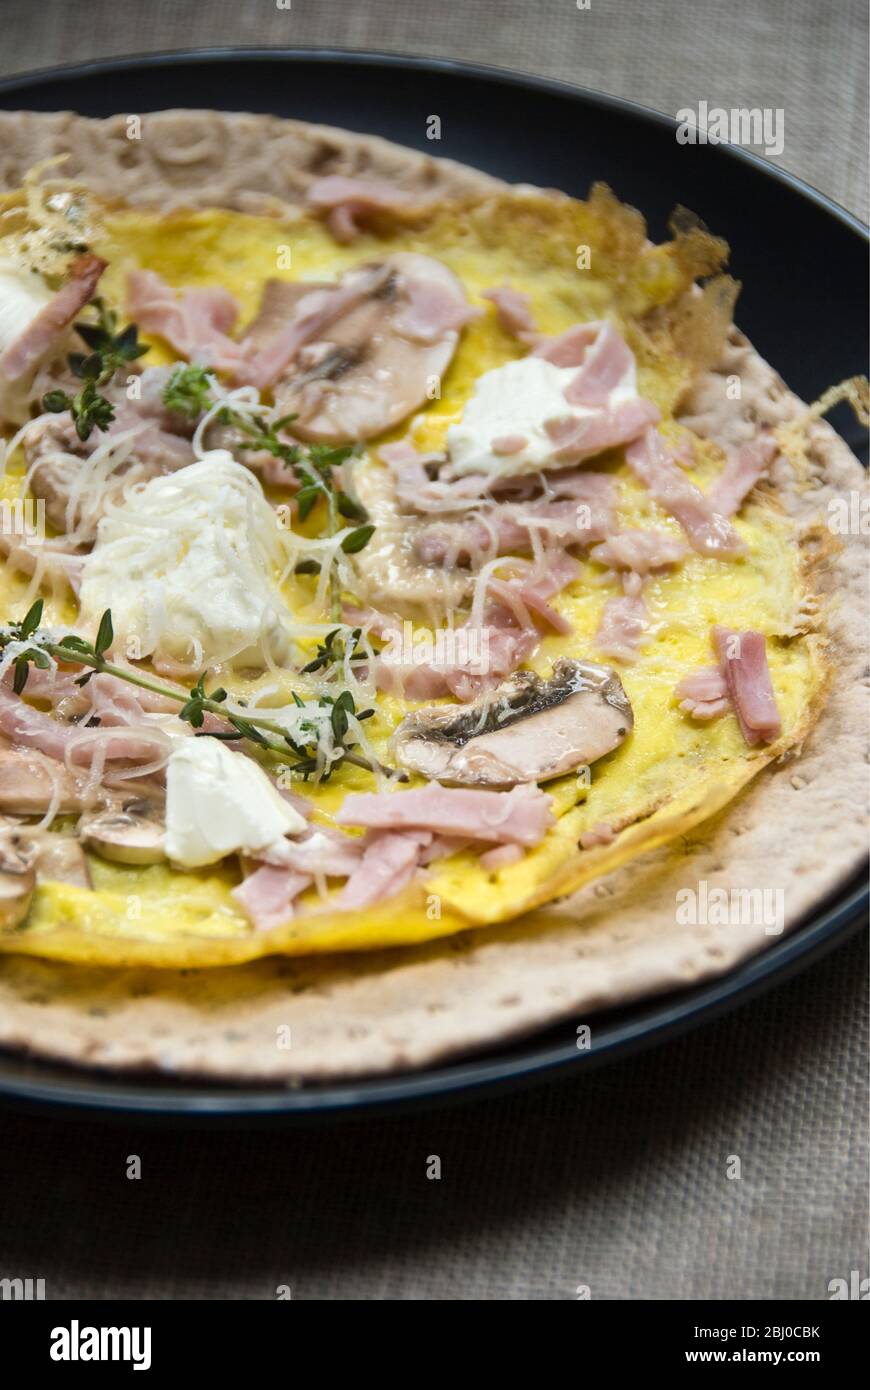 Omelette im dünnen Pfannkuchen-Stil mit Pilz, Schinken, Ziegenkäse und Parmesan auf dünnem schwedischen Brot, bevor es als tragbares Frühstück aufgerollt wird. - Stockfoto